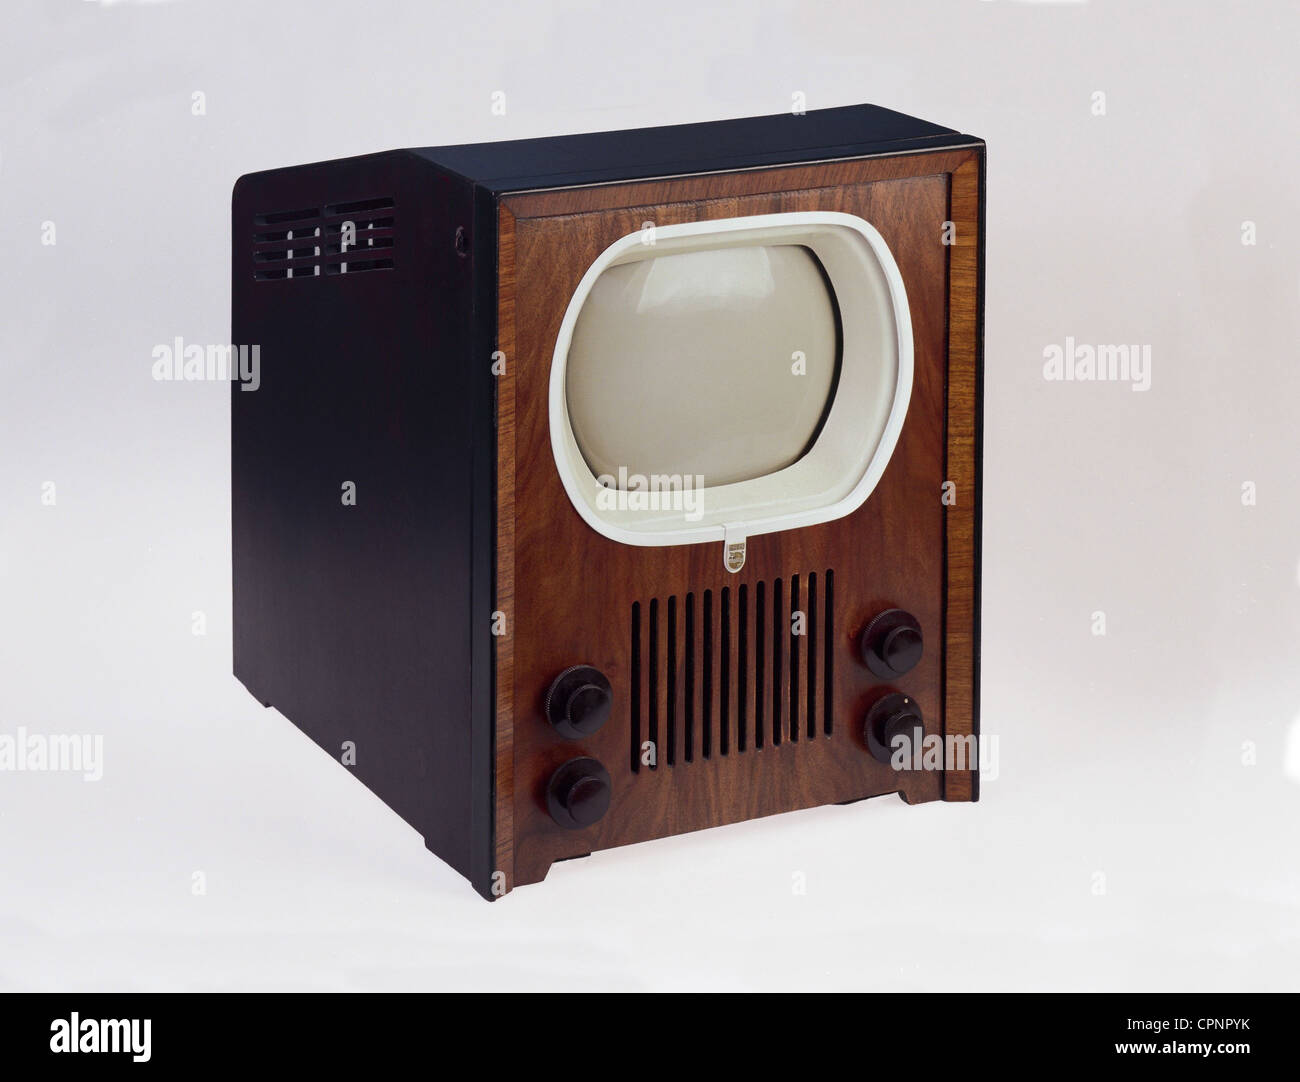 Broadcast, télévision, téléviseur Philips TX400U, premier téléviseur néerlandais, pays-Bas, 1951, droits supplémentaires-Clearences-non disponible Banque D'Images